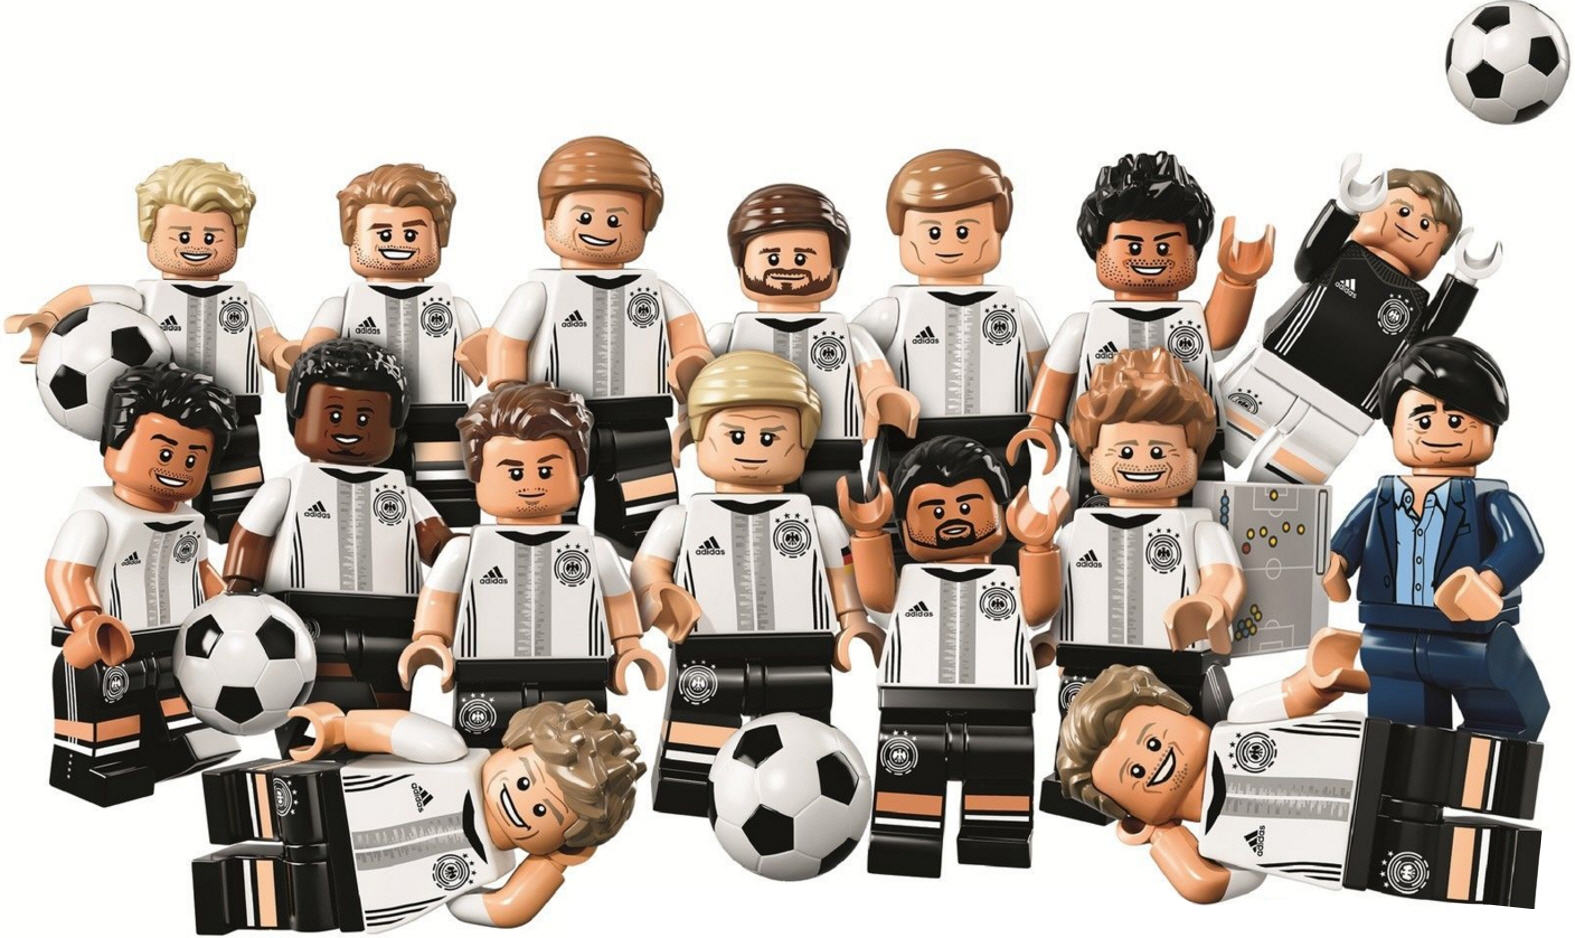 LEGO 71014 Euro 2016 DFB Die Mannschaft Minifiguren aussuchen aus allen 16 